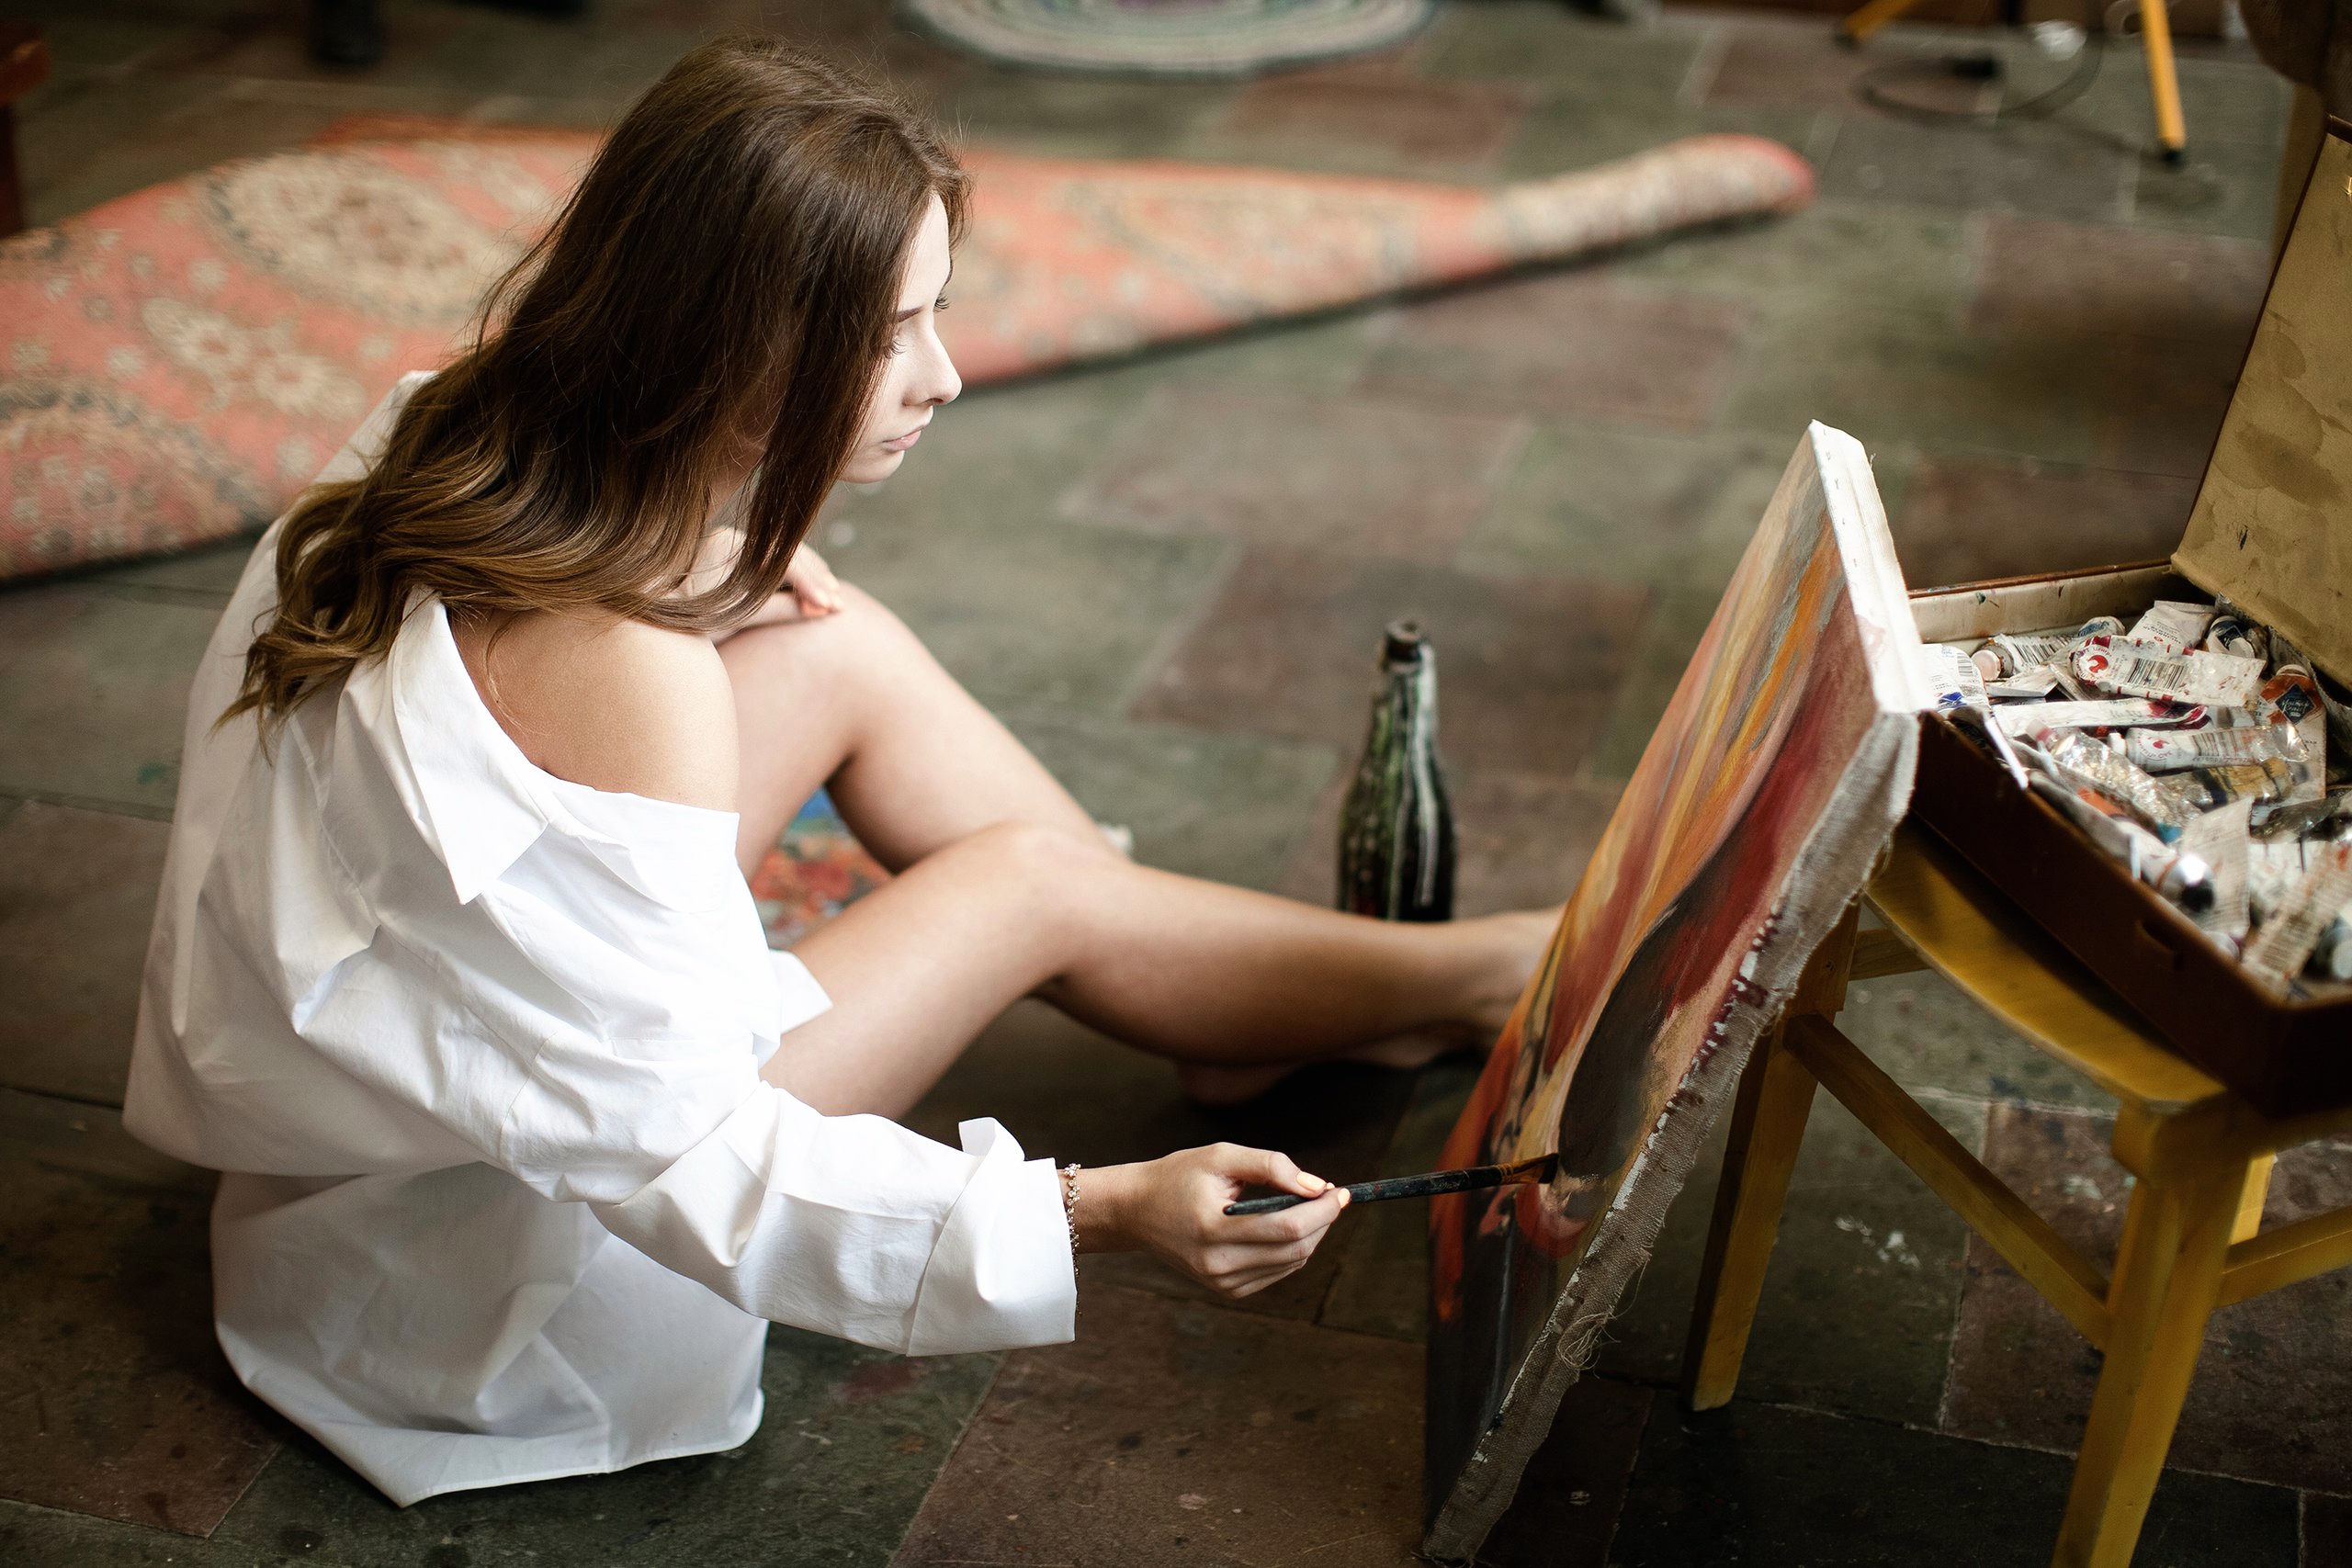 Художник облил натурщицу краской и трахнул ее тело у себя в мастерской